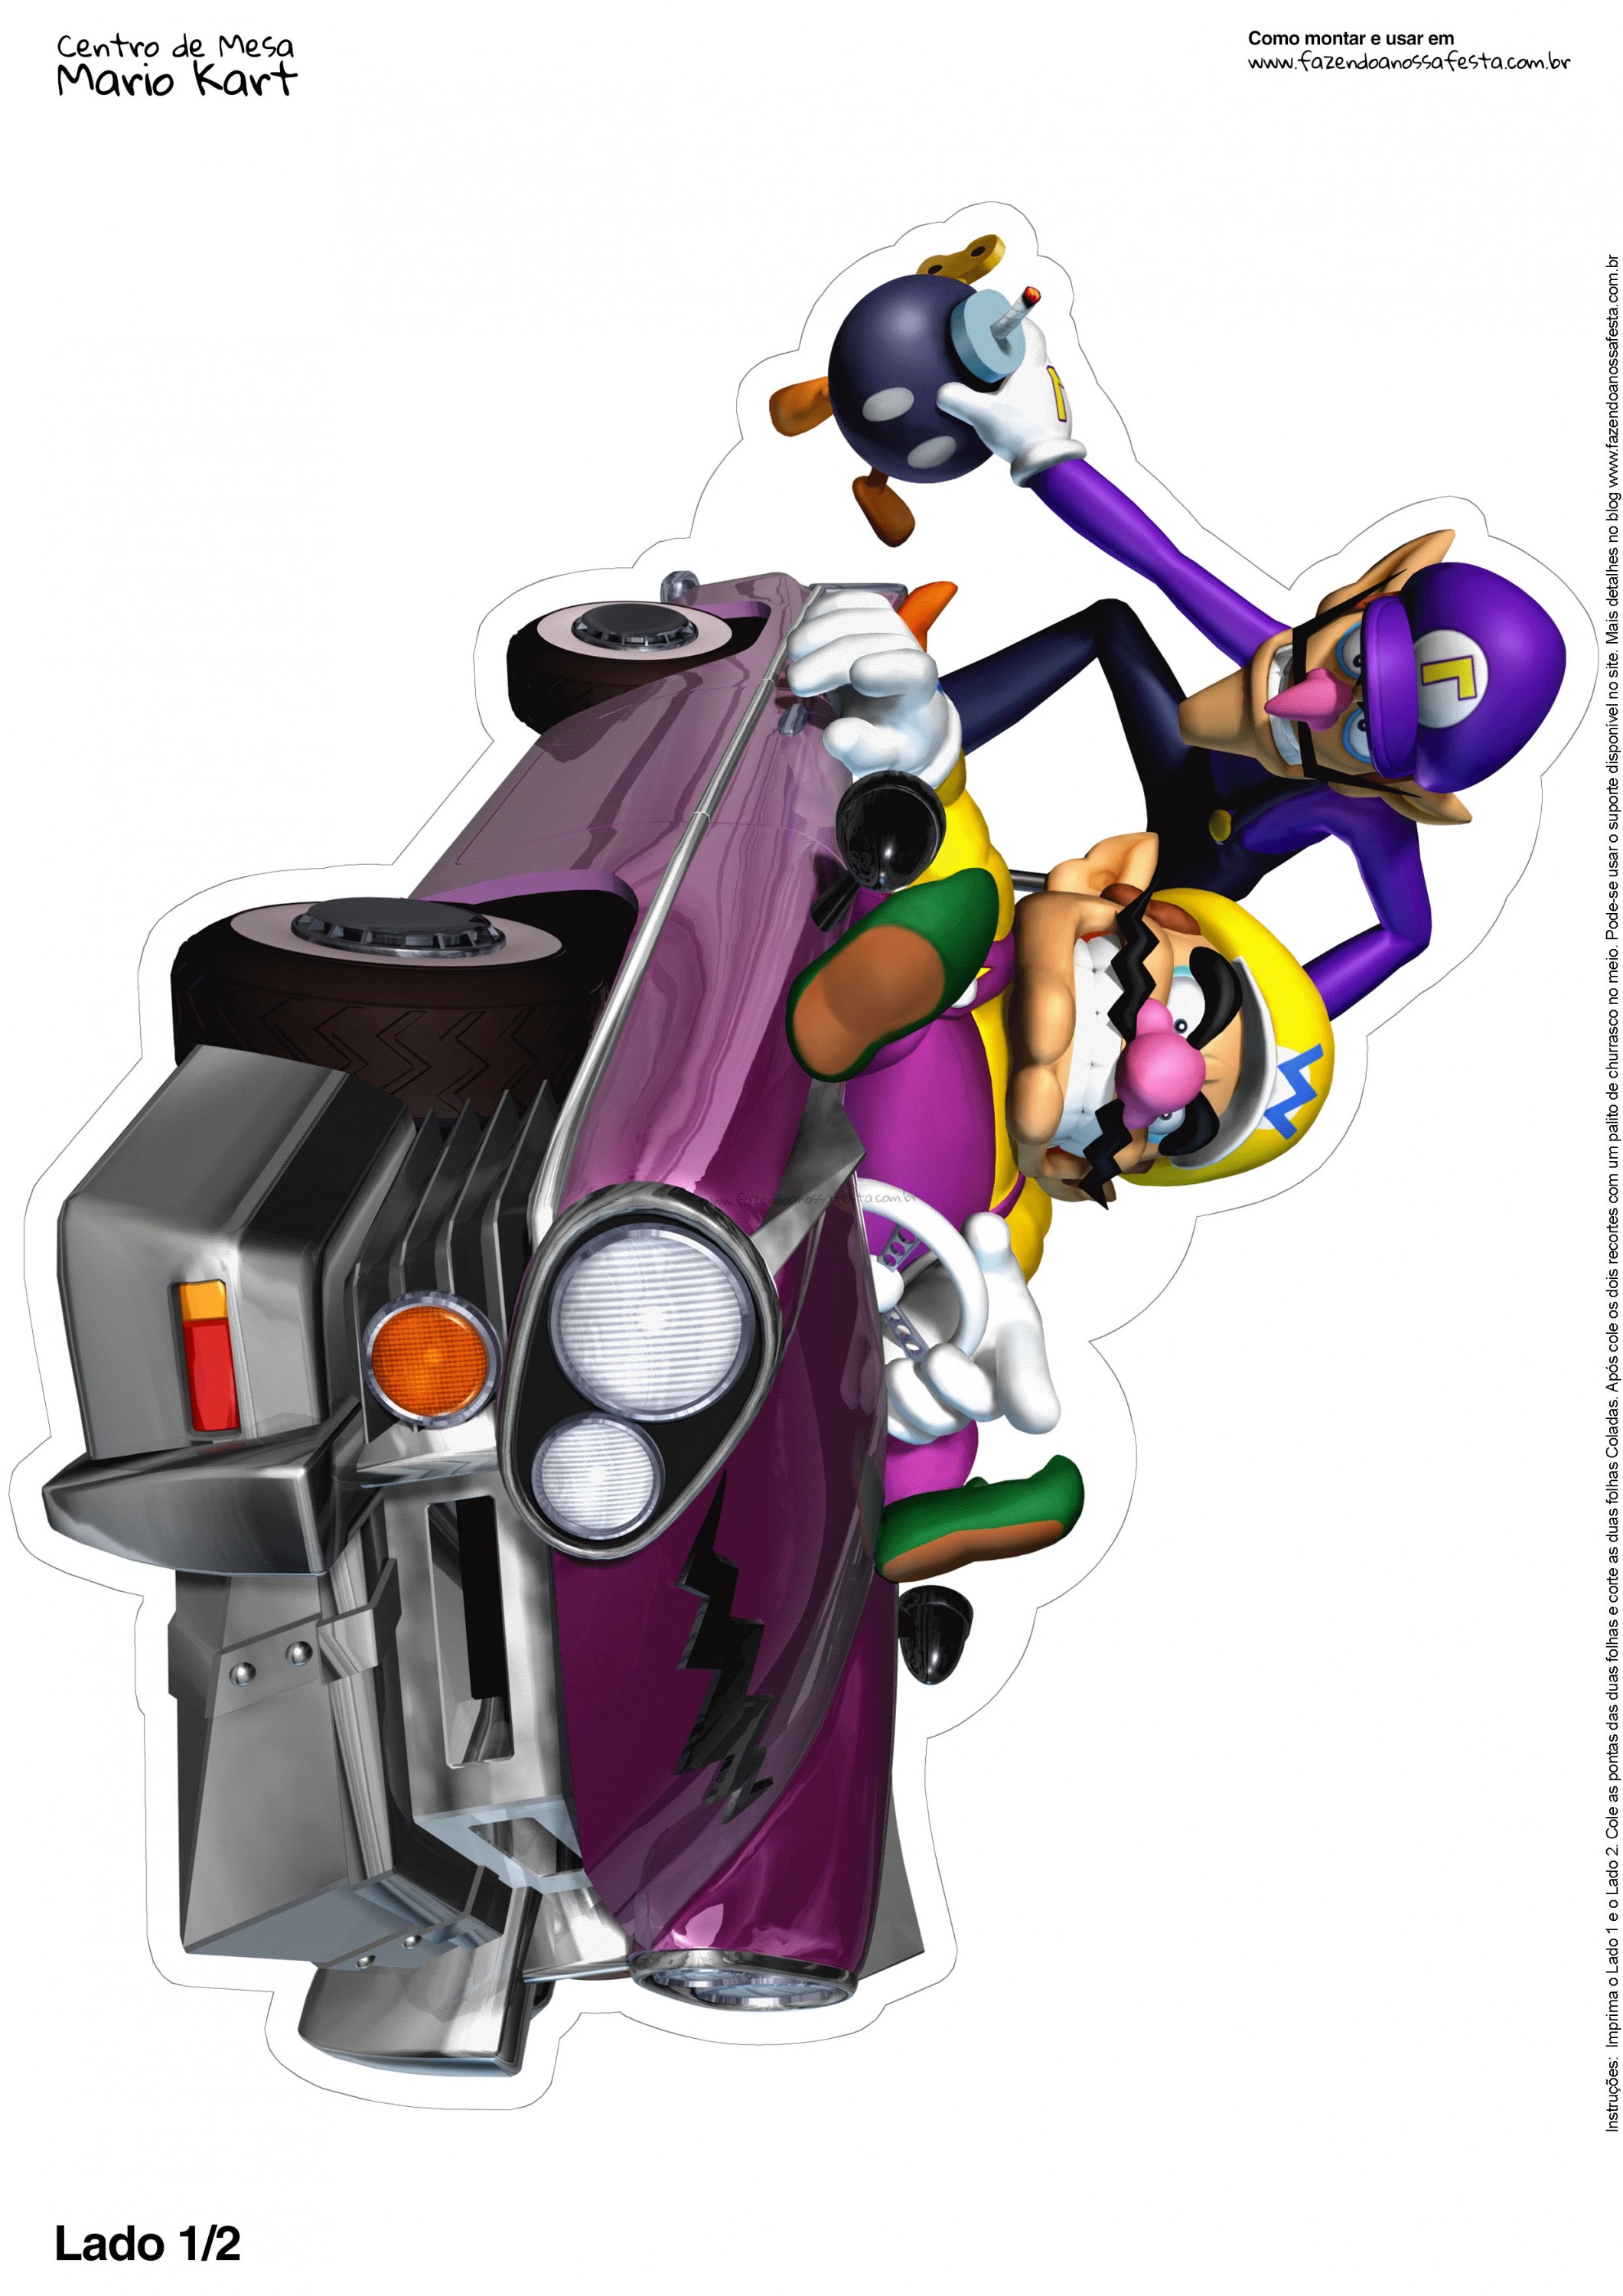 Centro de Mesa Mario Kart Wario 1 2